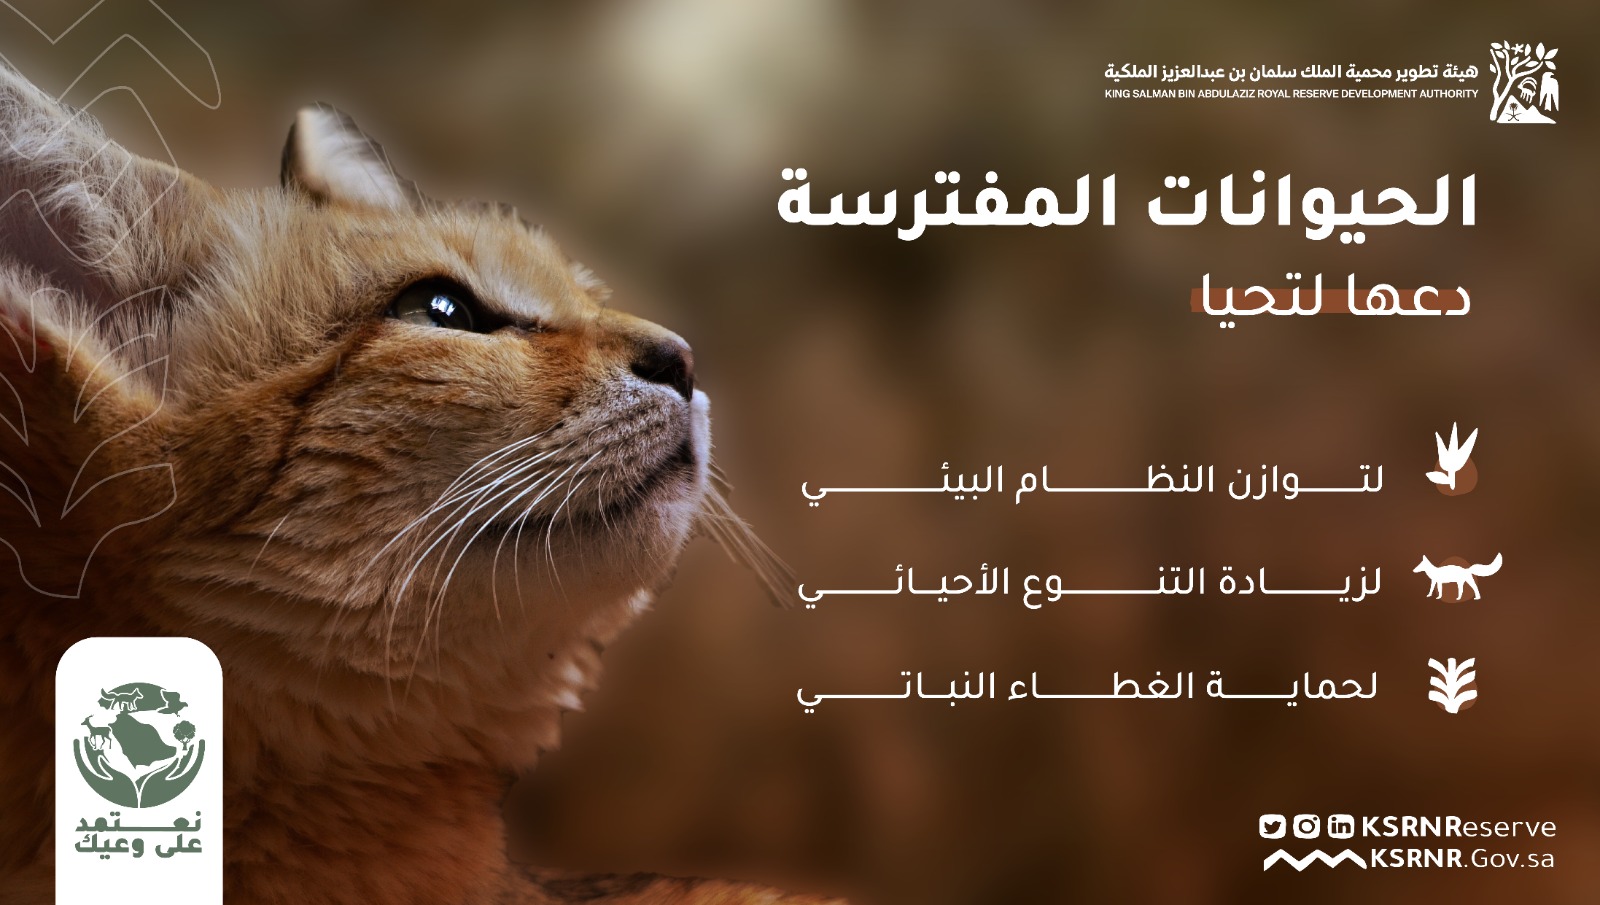 هيئة تطوير محمية الملك سلمان بن عبدالعزيز الملكية تعزز الوعي بالتوازن البيئي